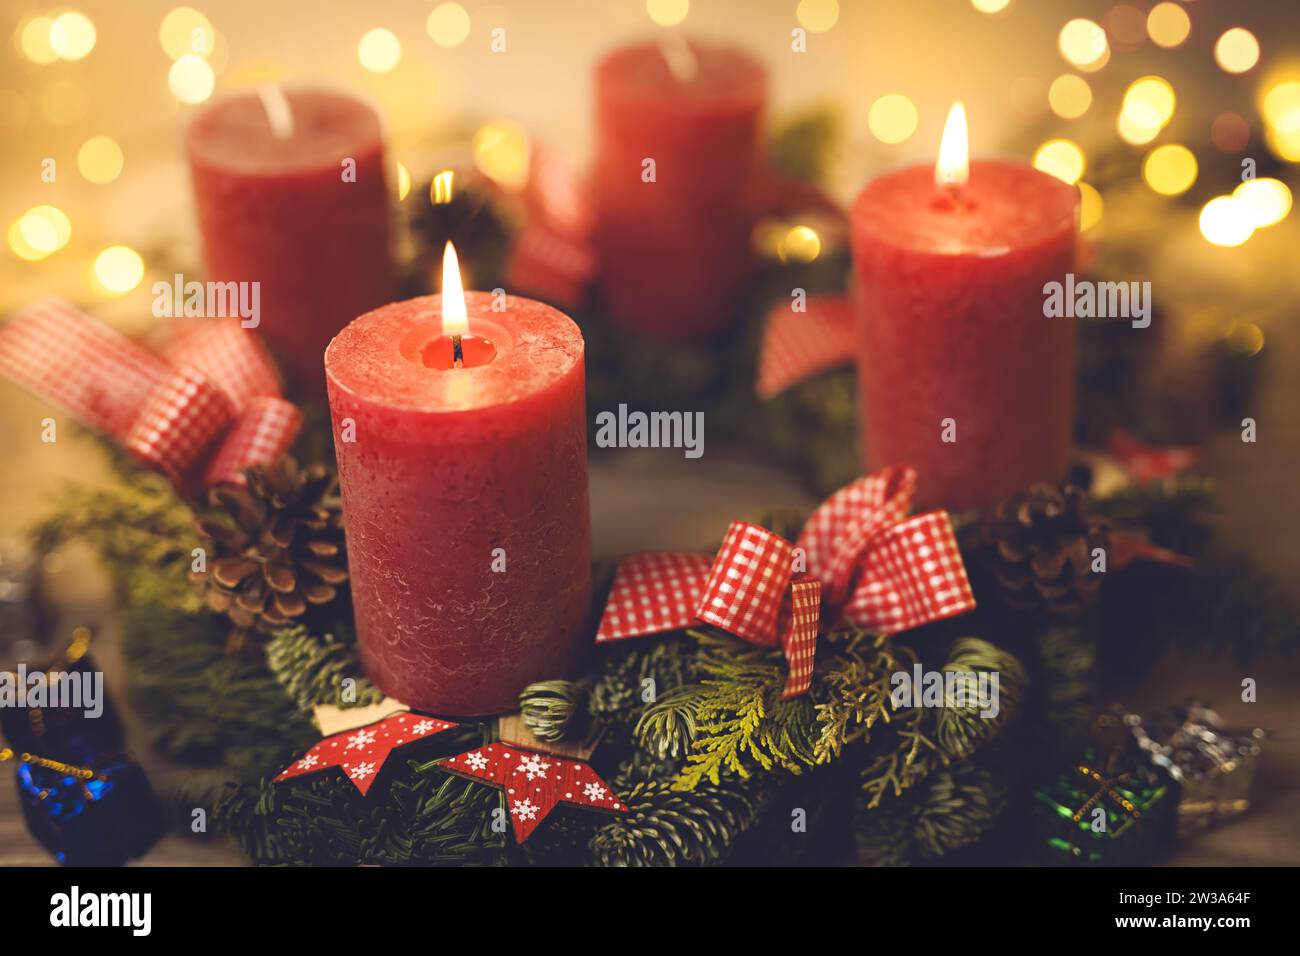 Adventskranz mit zwei brennenden Kerzen Stock Photo